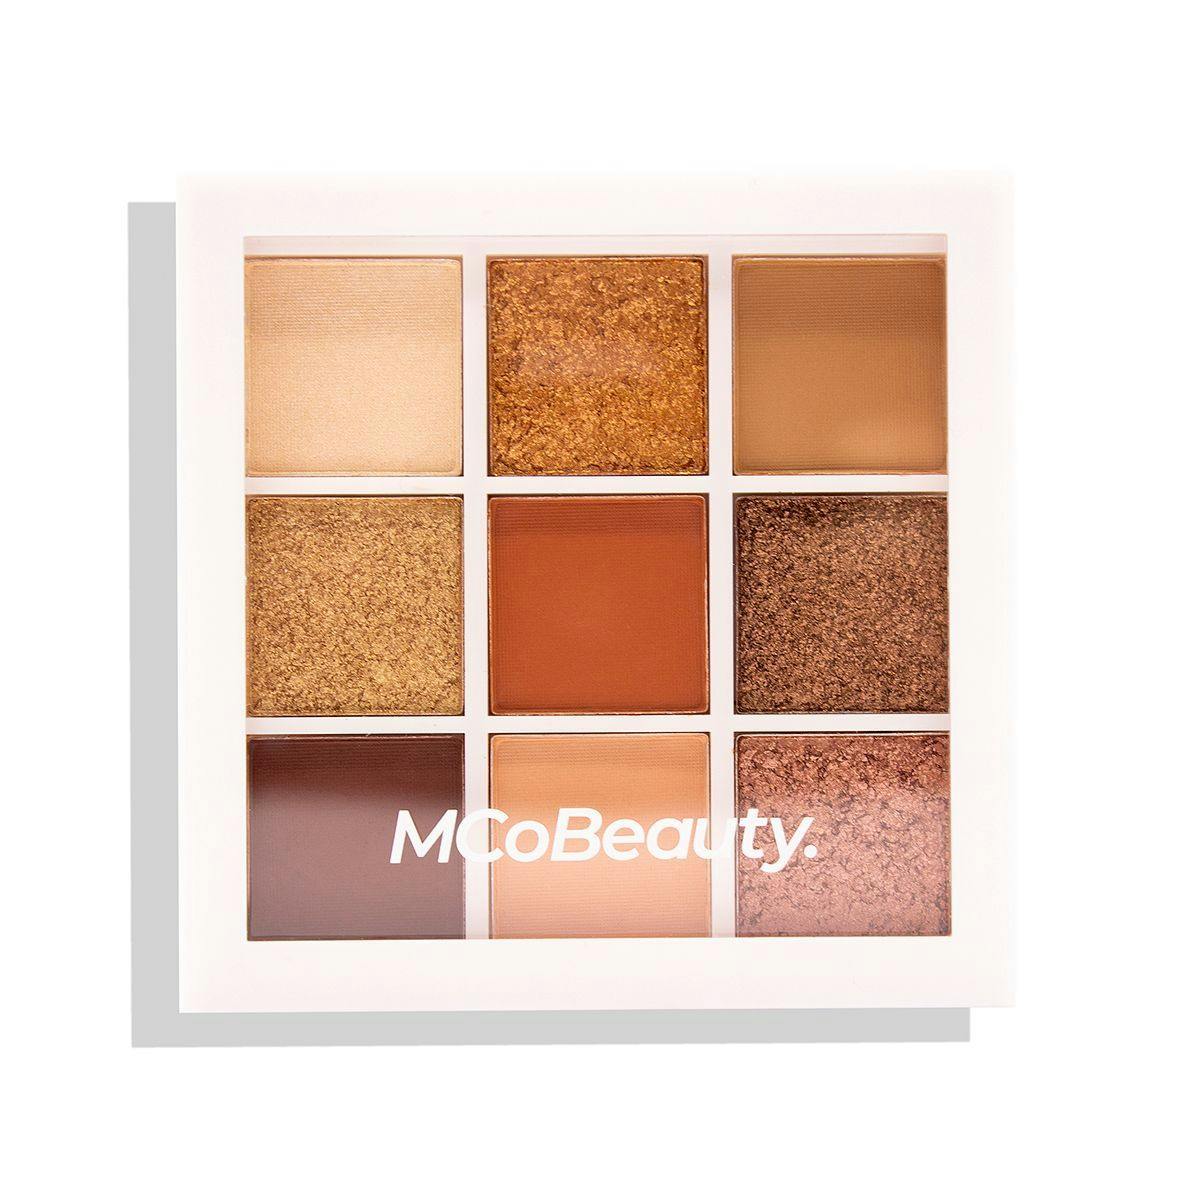 MCoBeauty Eyeshadow Palette Peachy/Nudes